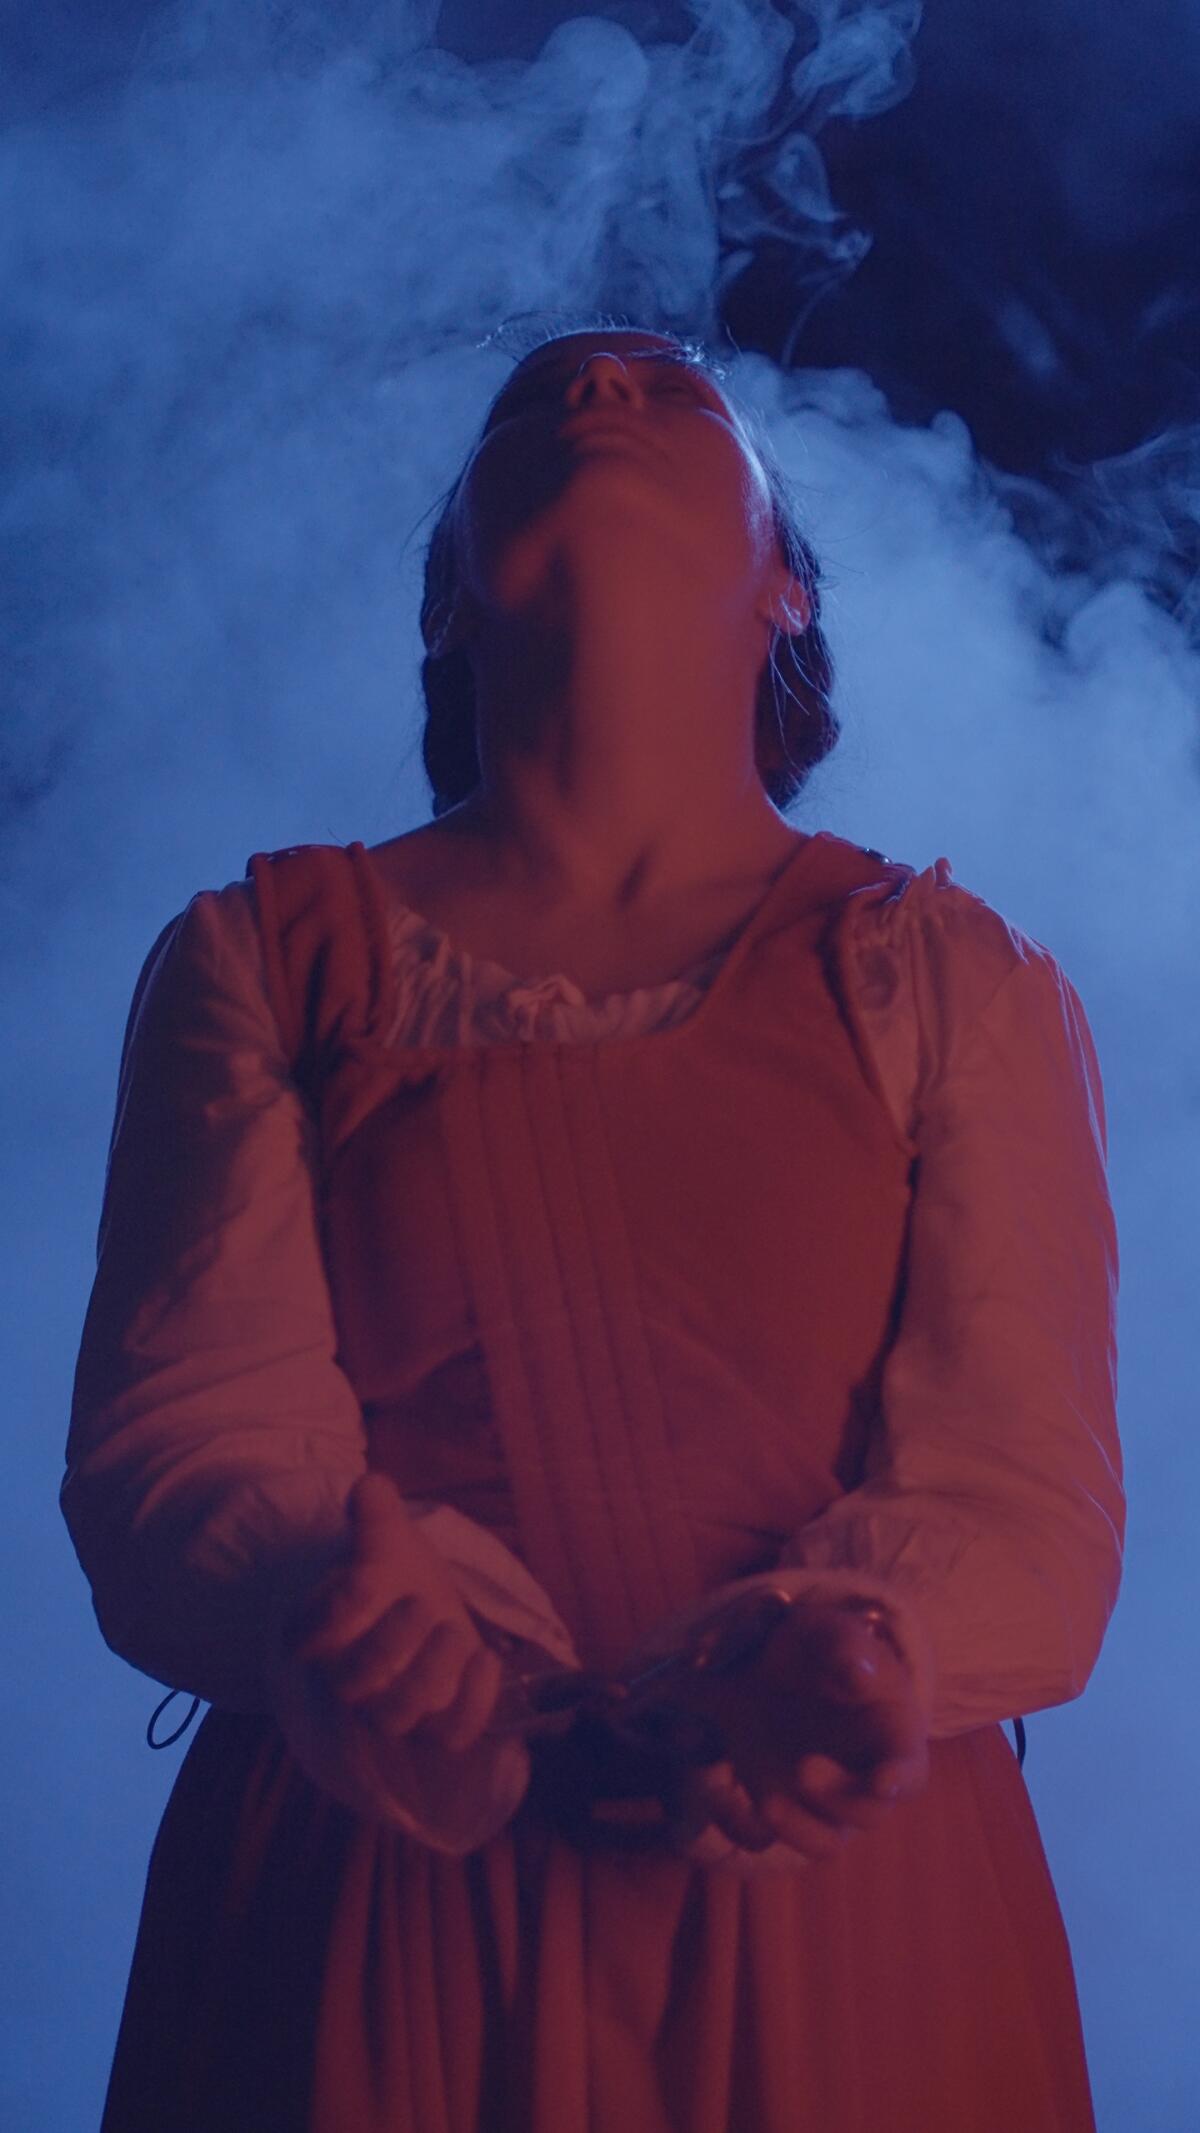 Jahnavi Alyssa como Anne Redferne en la producción teatral inmersiva “Witch!”